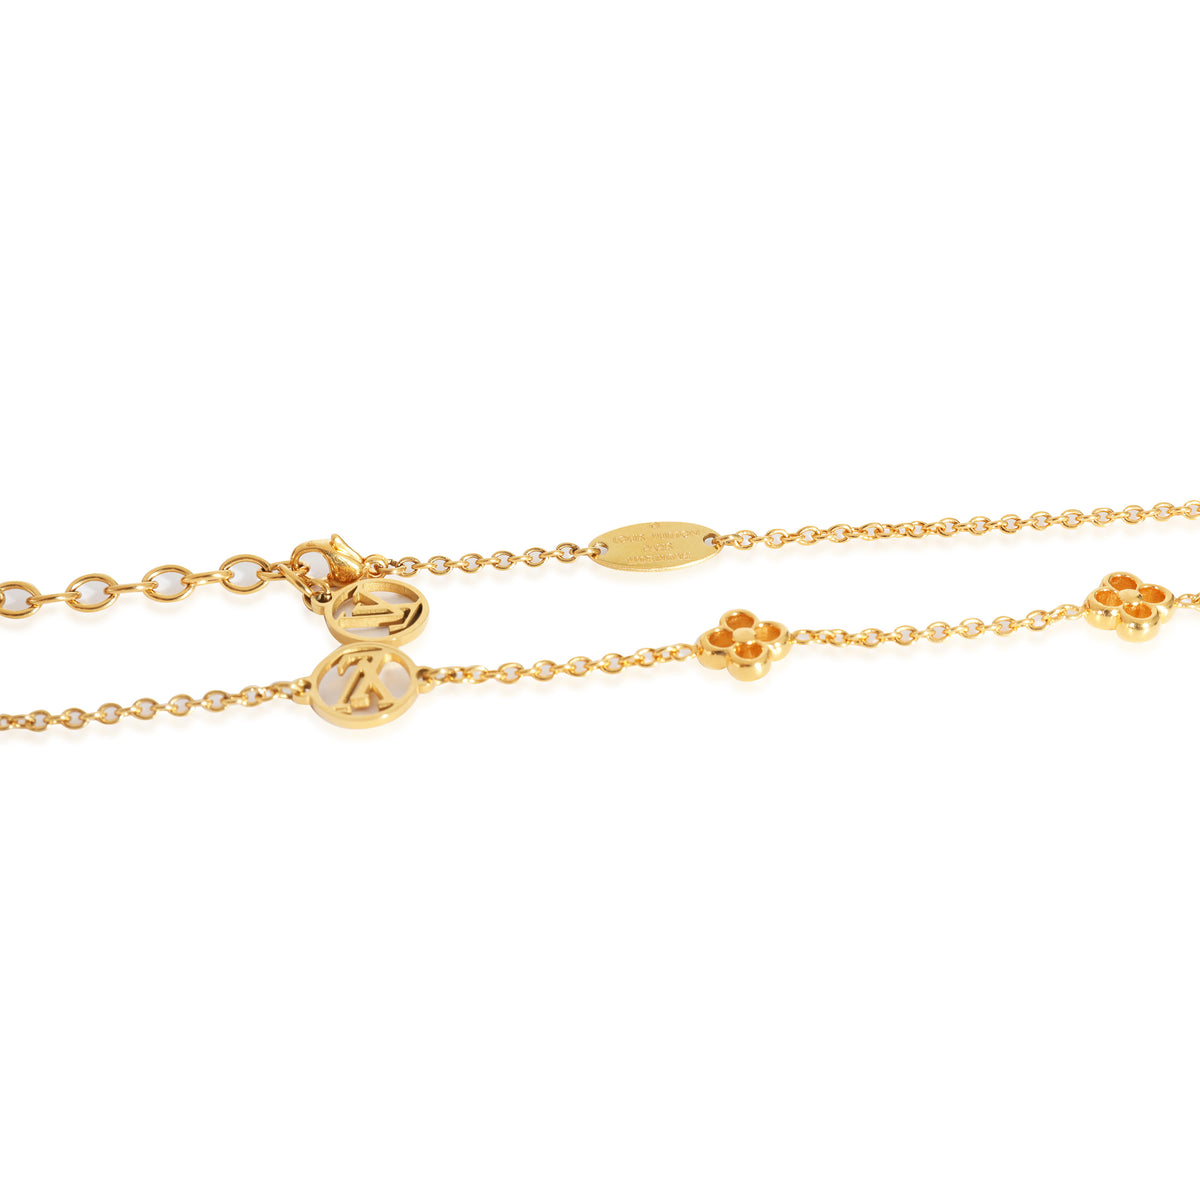 Louis Vuitton Flower Station Gold Tone Bracelet, myGemma, CH